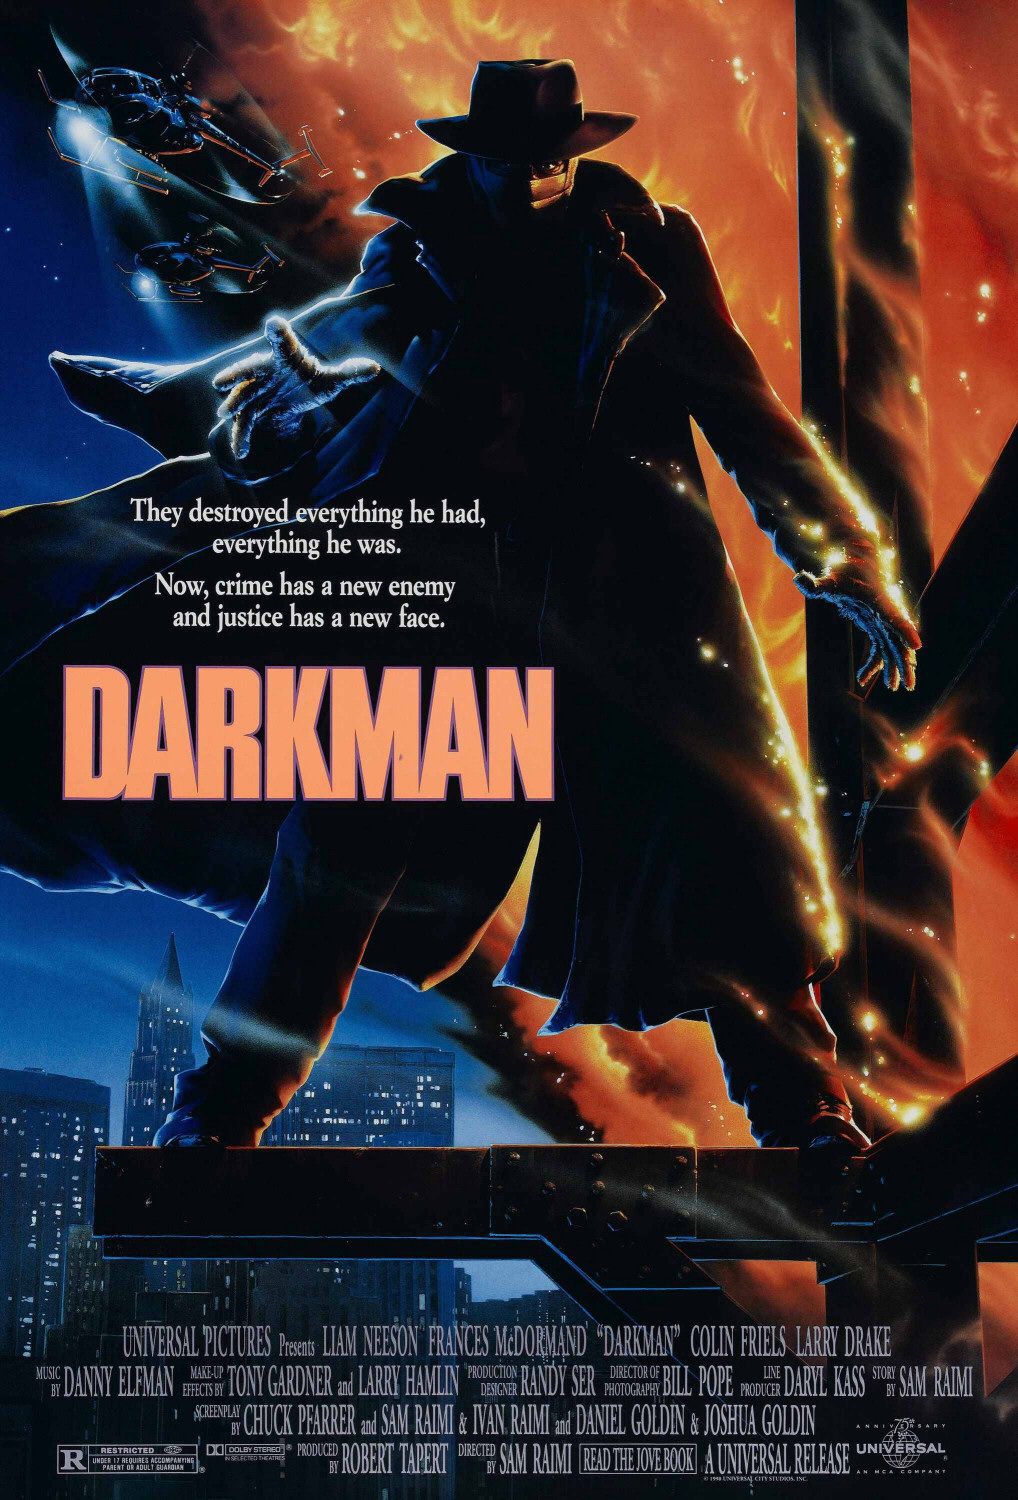 ดูหนังออนไลน์ฟรี DARKMAN 1990 ดาร์คแมน หลุดจากคน ดูหนัง